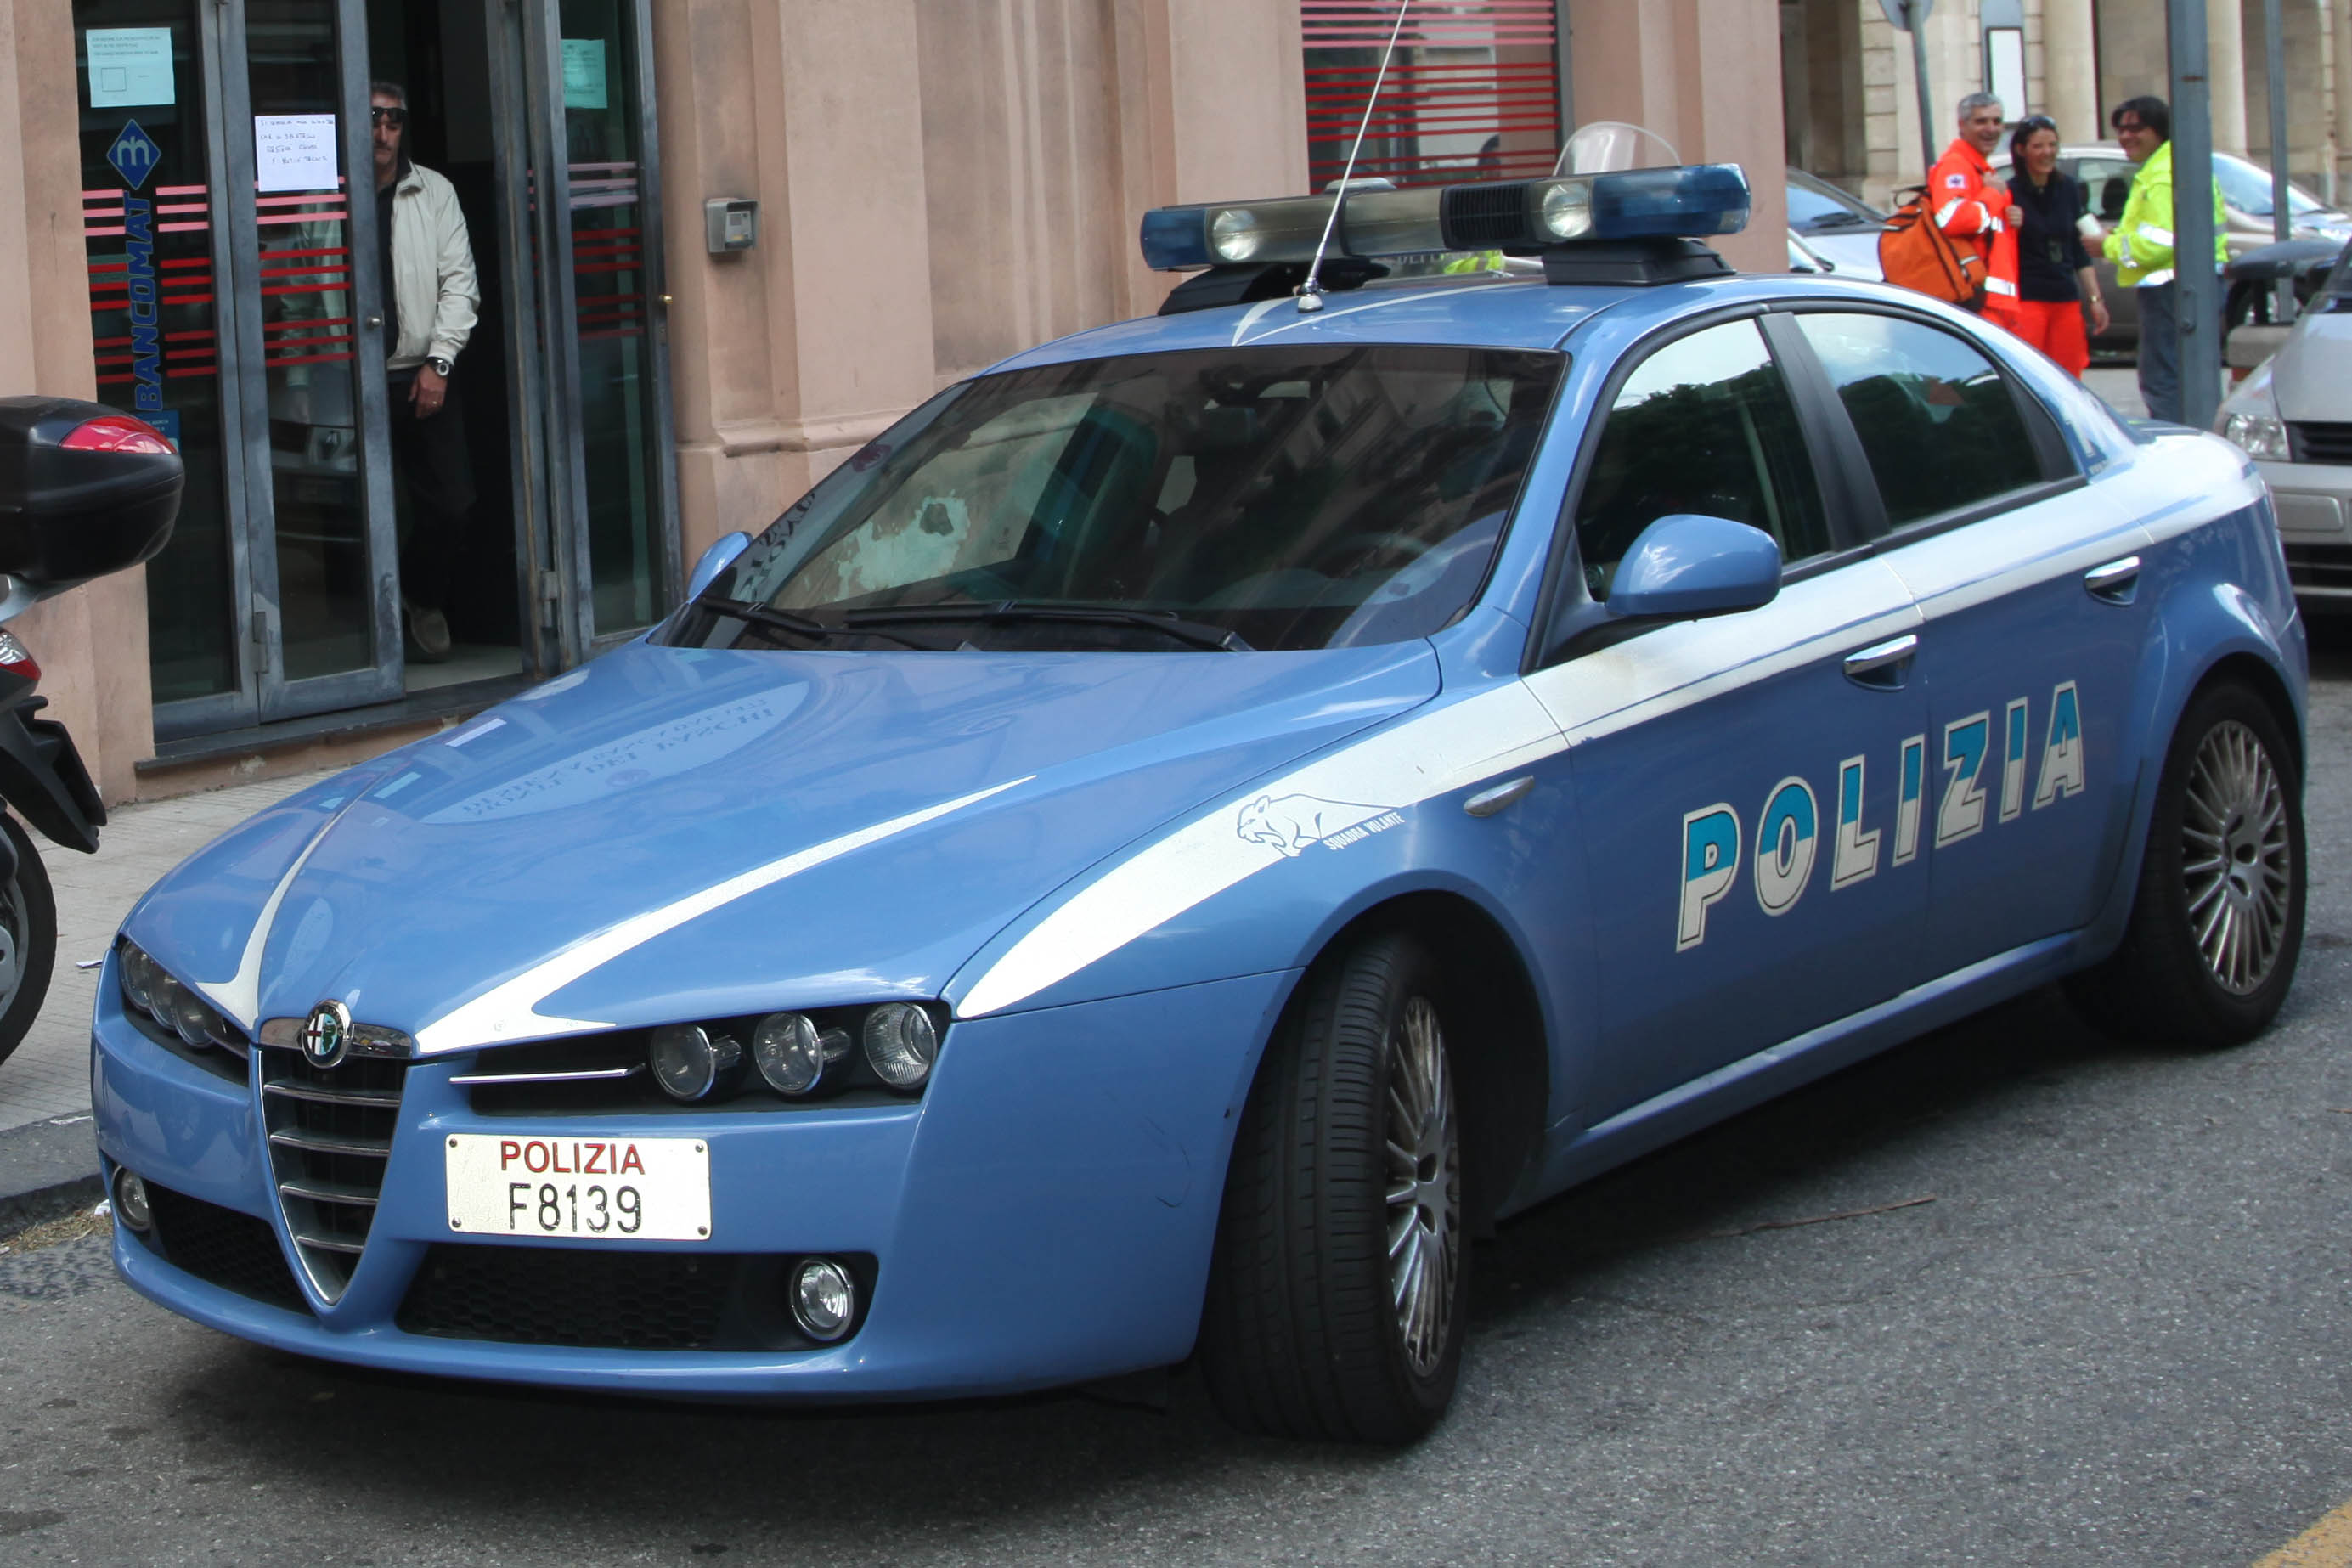 Messina più sicura, un 2017 in prima linea per la polizia